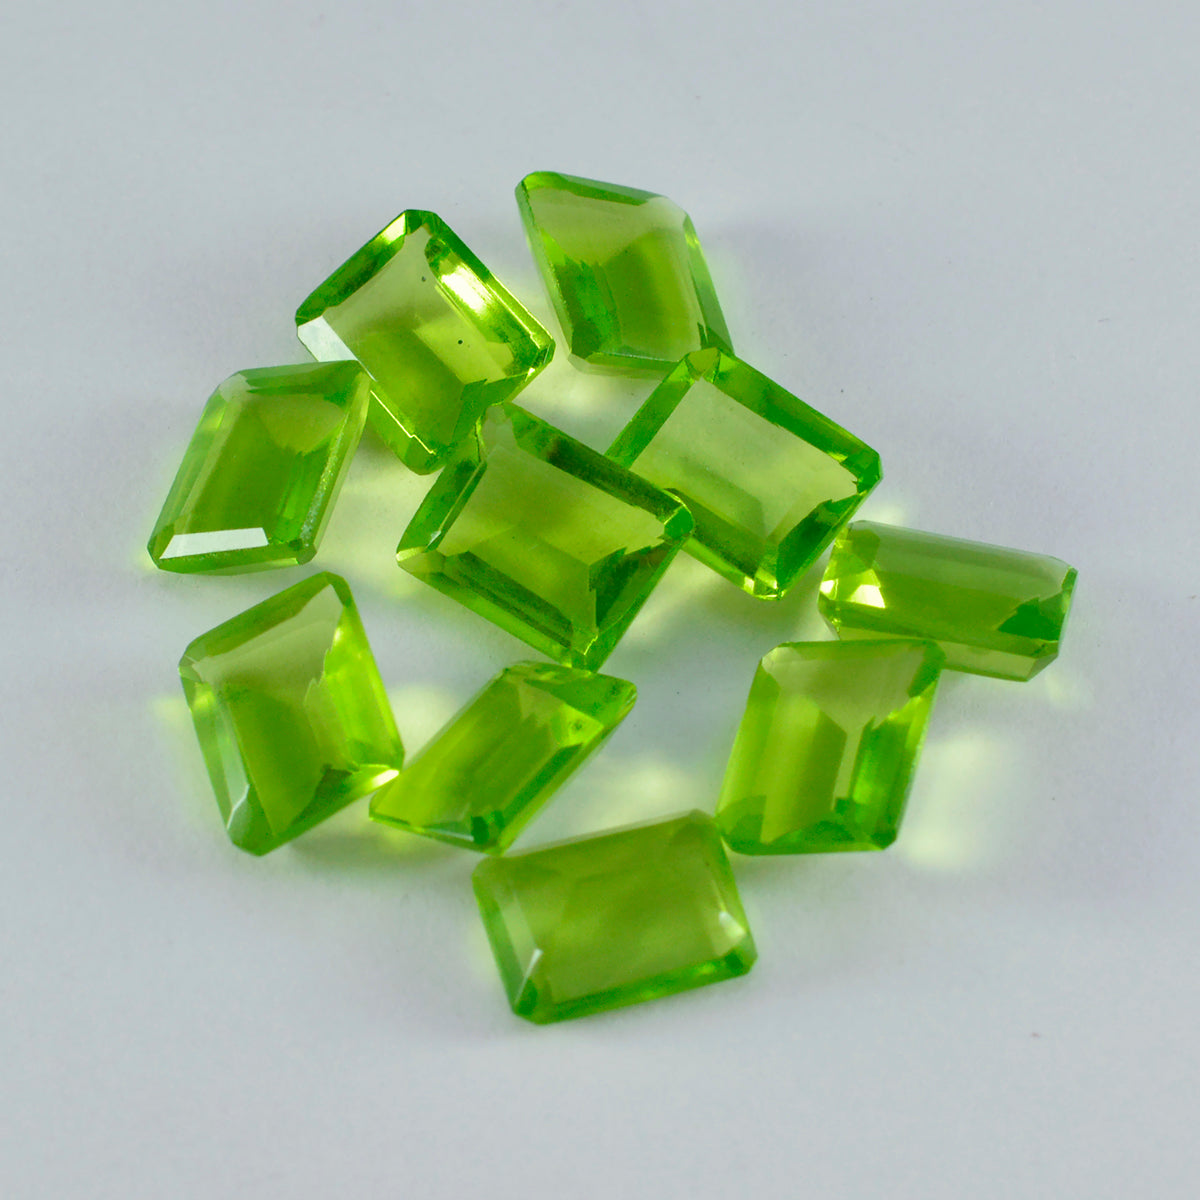 riyogems 1шт зеленый перидот cz граненый 4x6 мм восьмиугольная форма драгоценный камень отличного качества